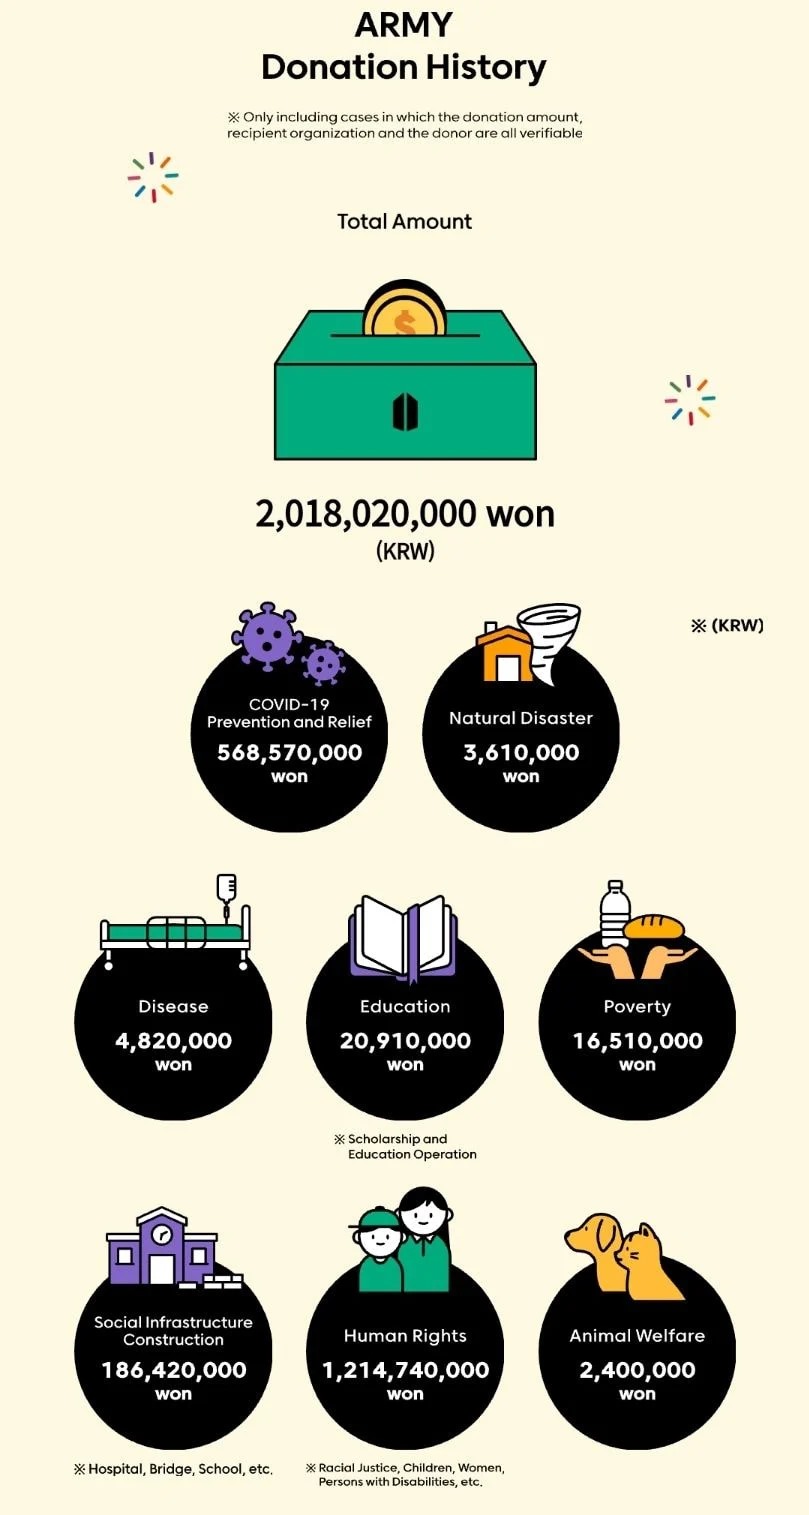 ARMY - fandom của BTS đã quyên góp đượckhoảng 39,8 tỷ đồng cho các hoạt động xã hội (Ảnh: Chụp màn hình).